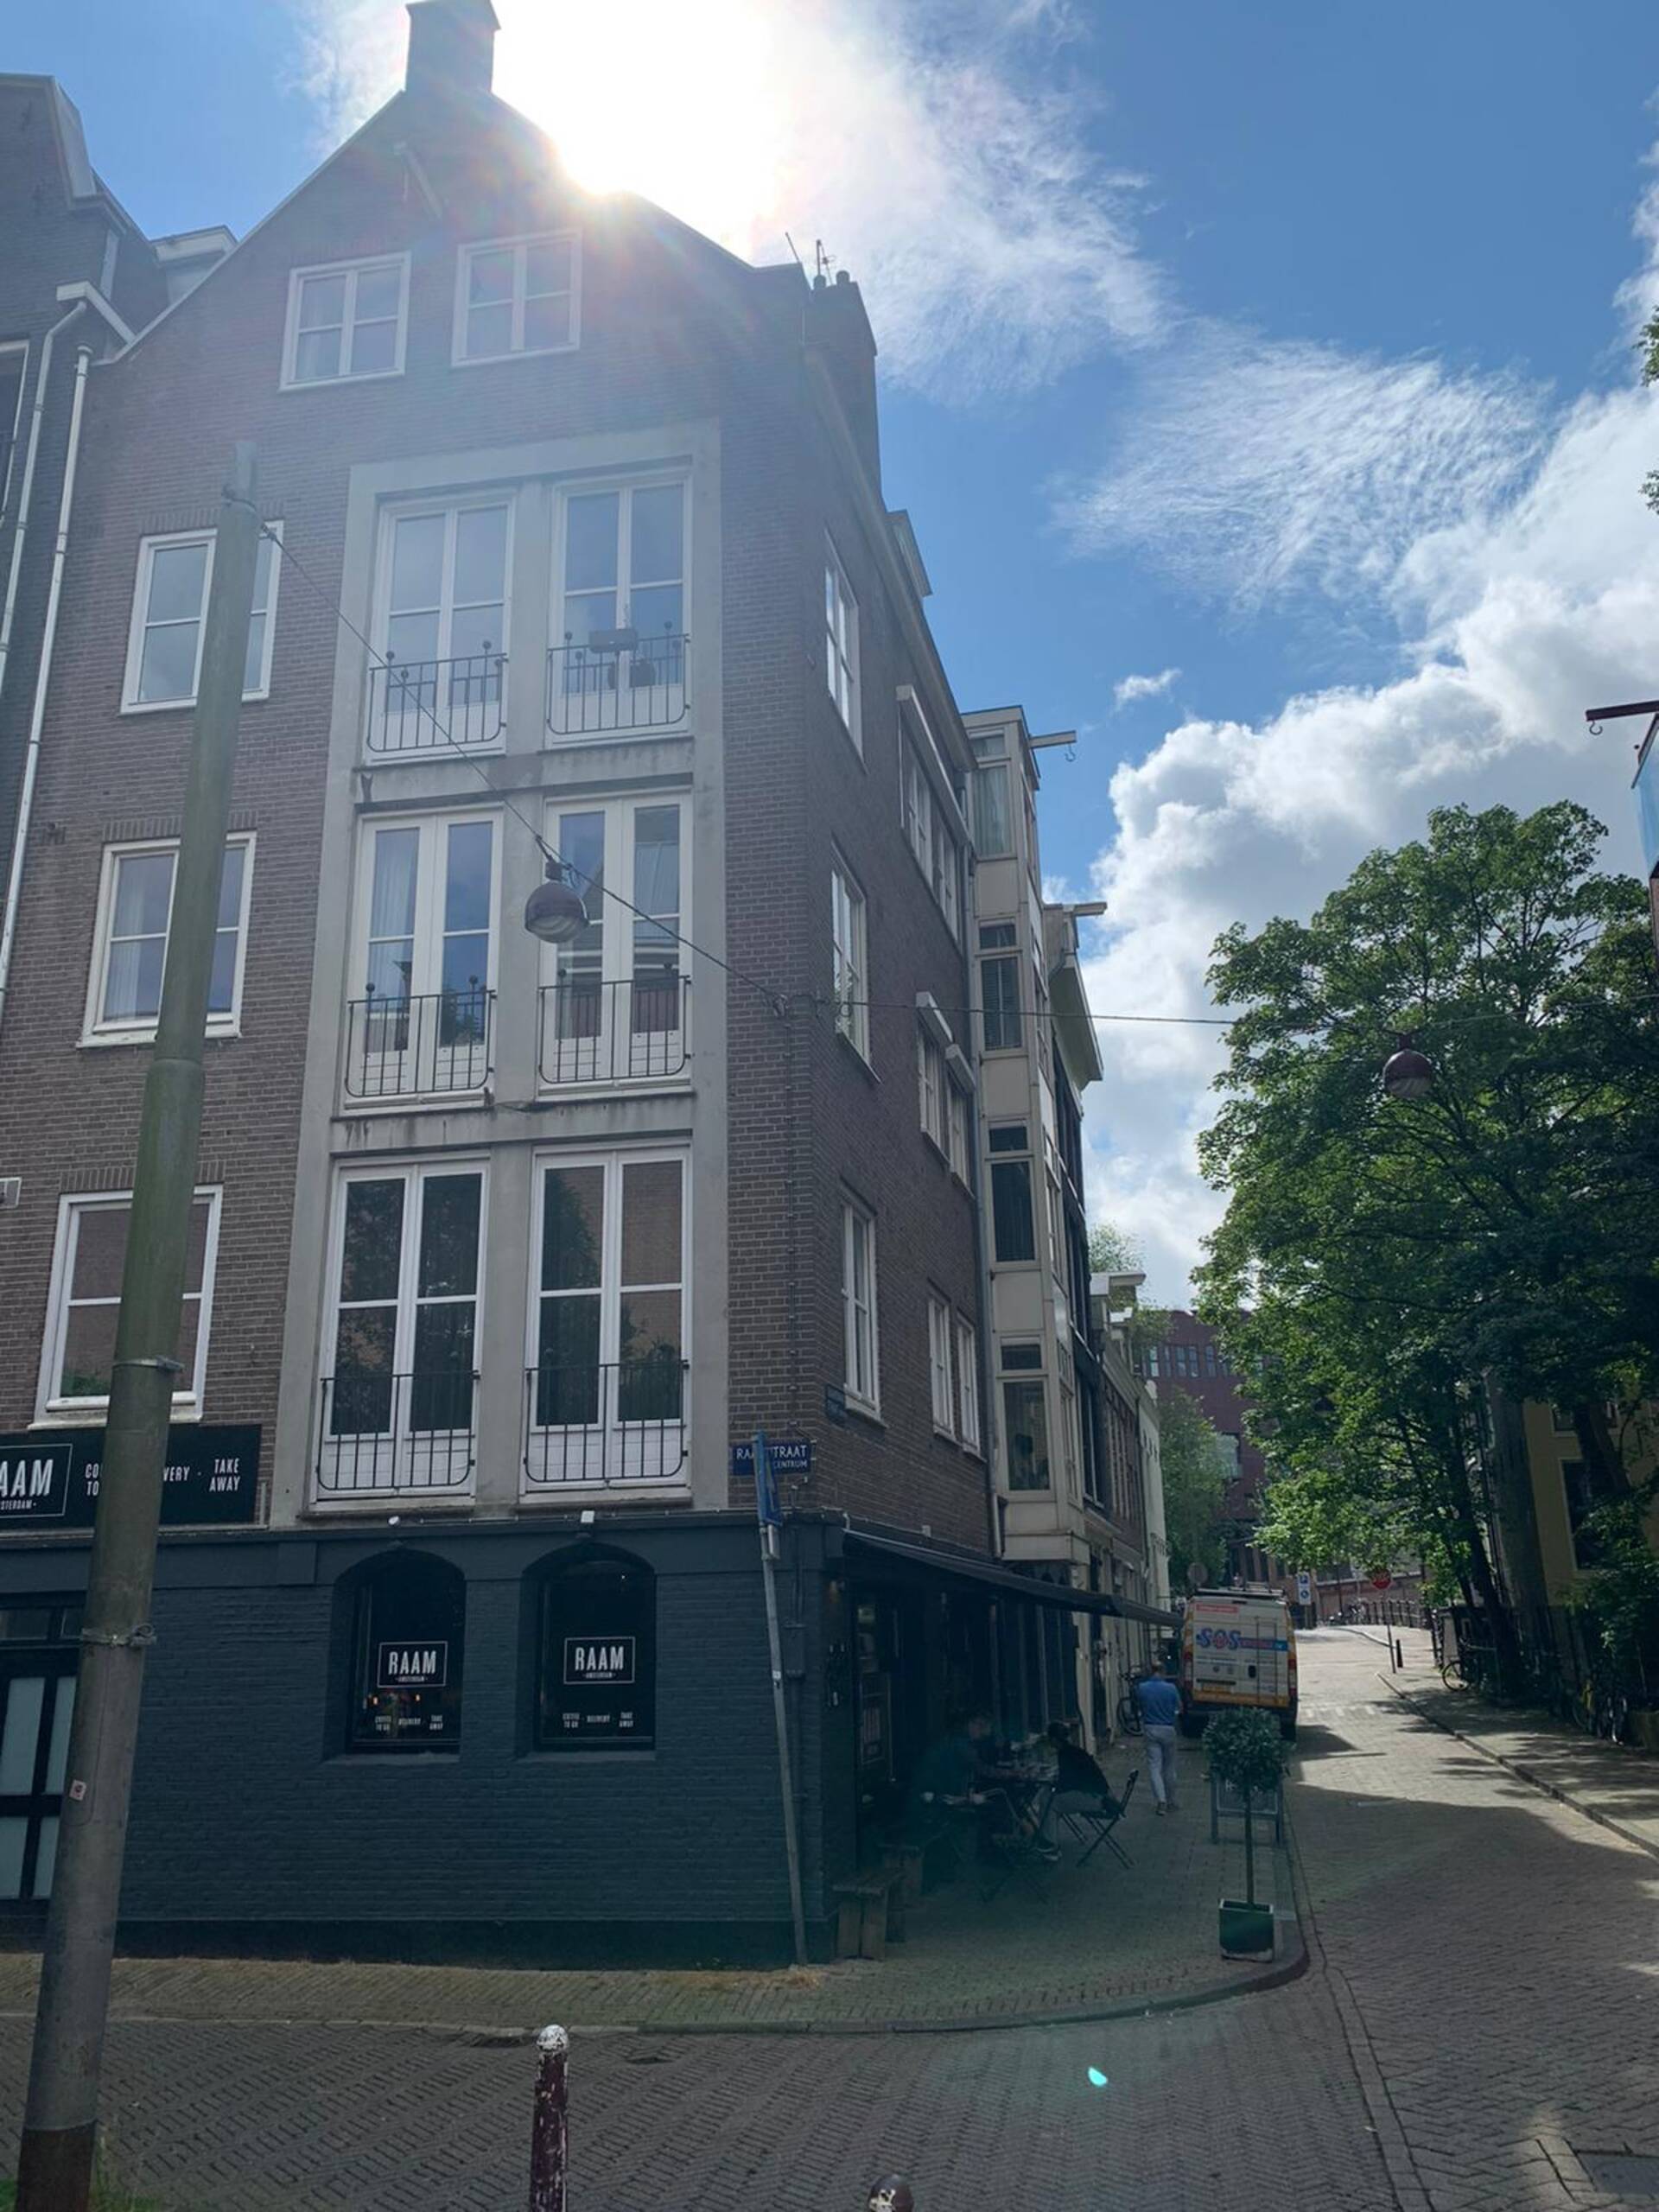 Raamstraat Amsterdam